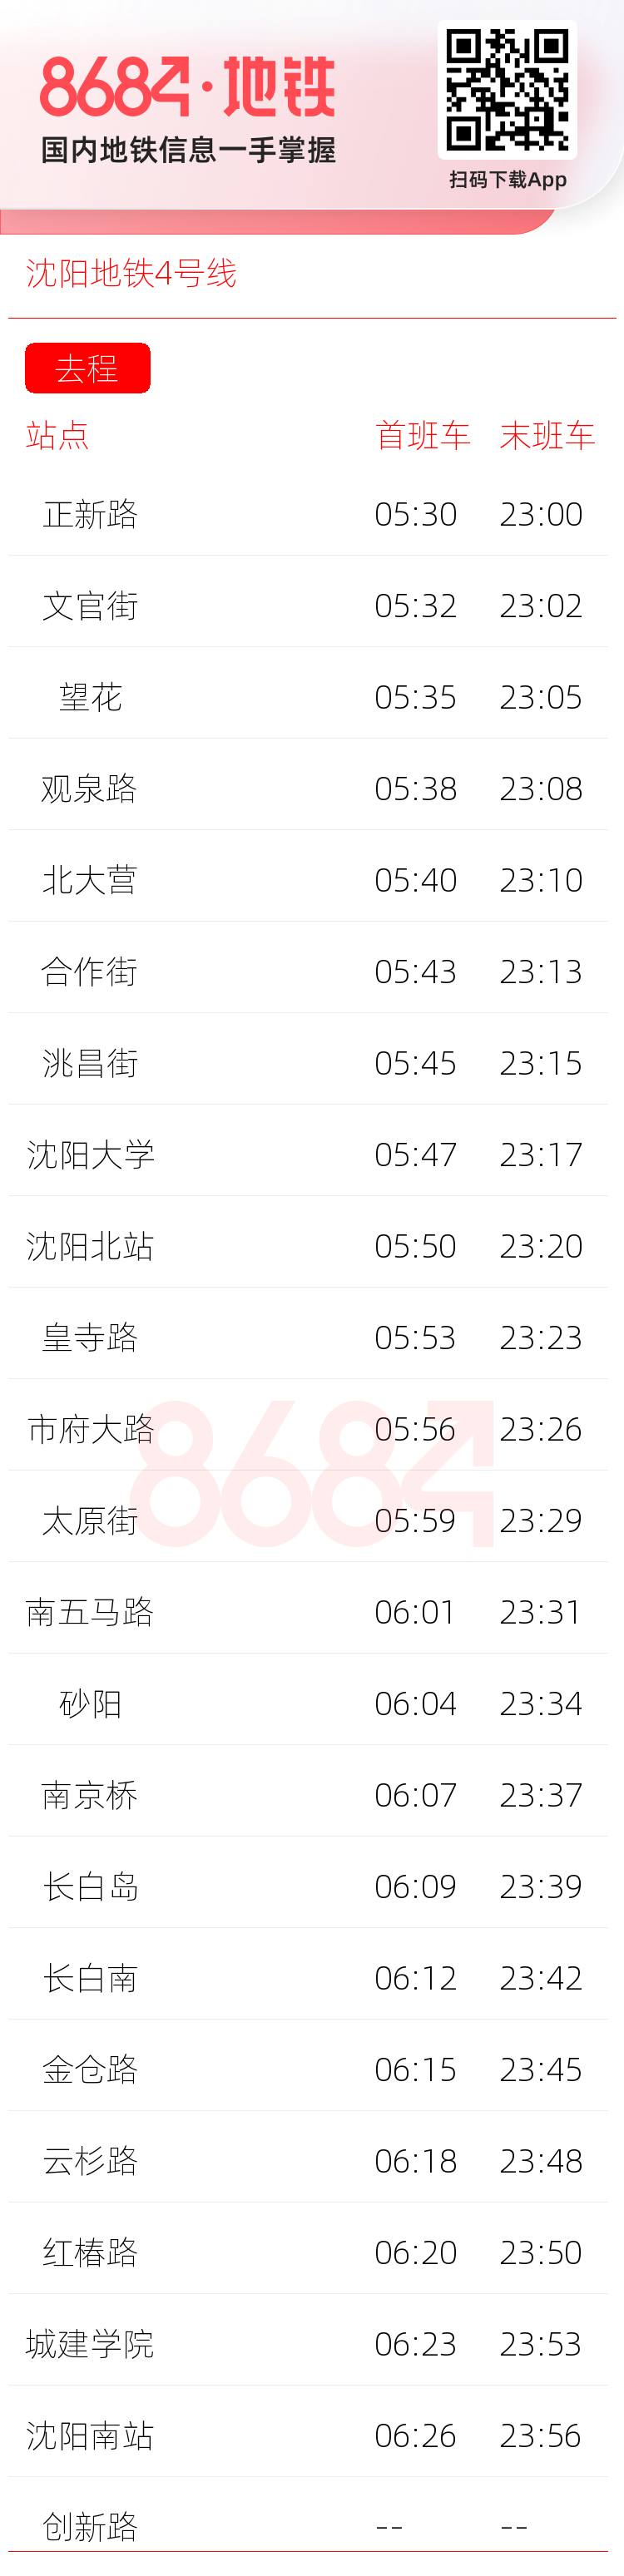 沈阳地铁4号线运营时间表